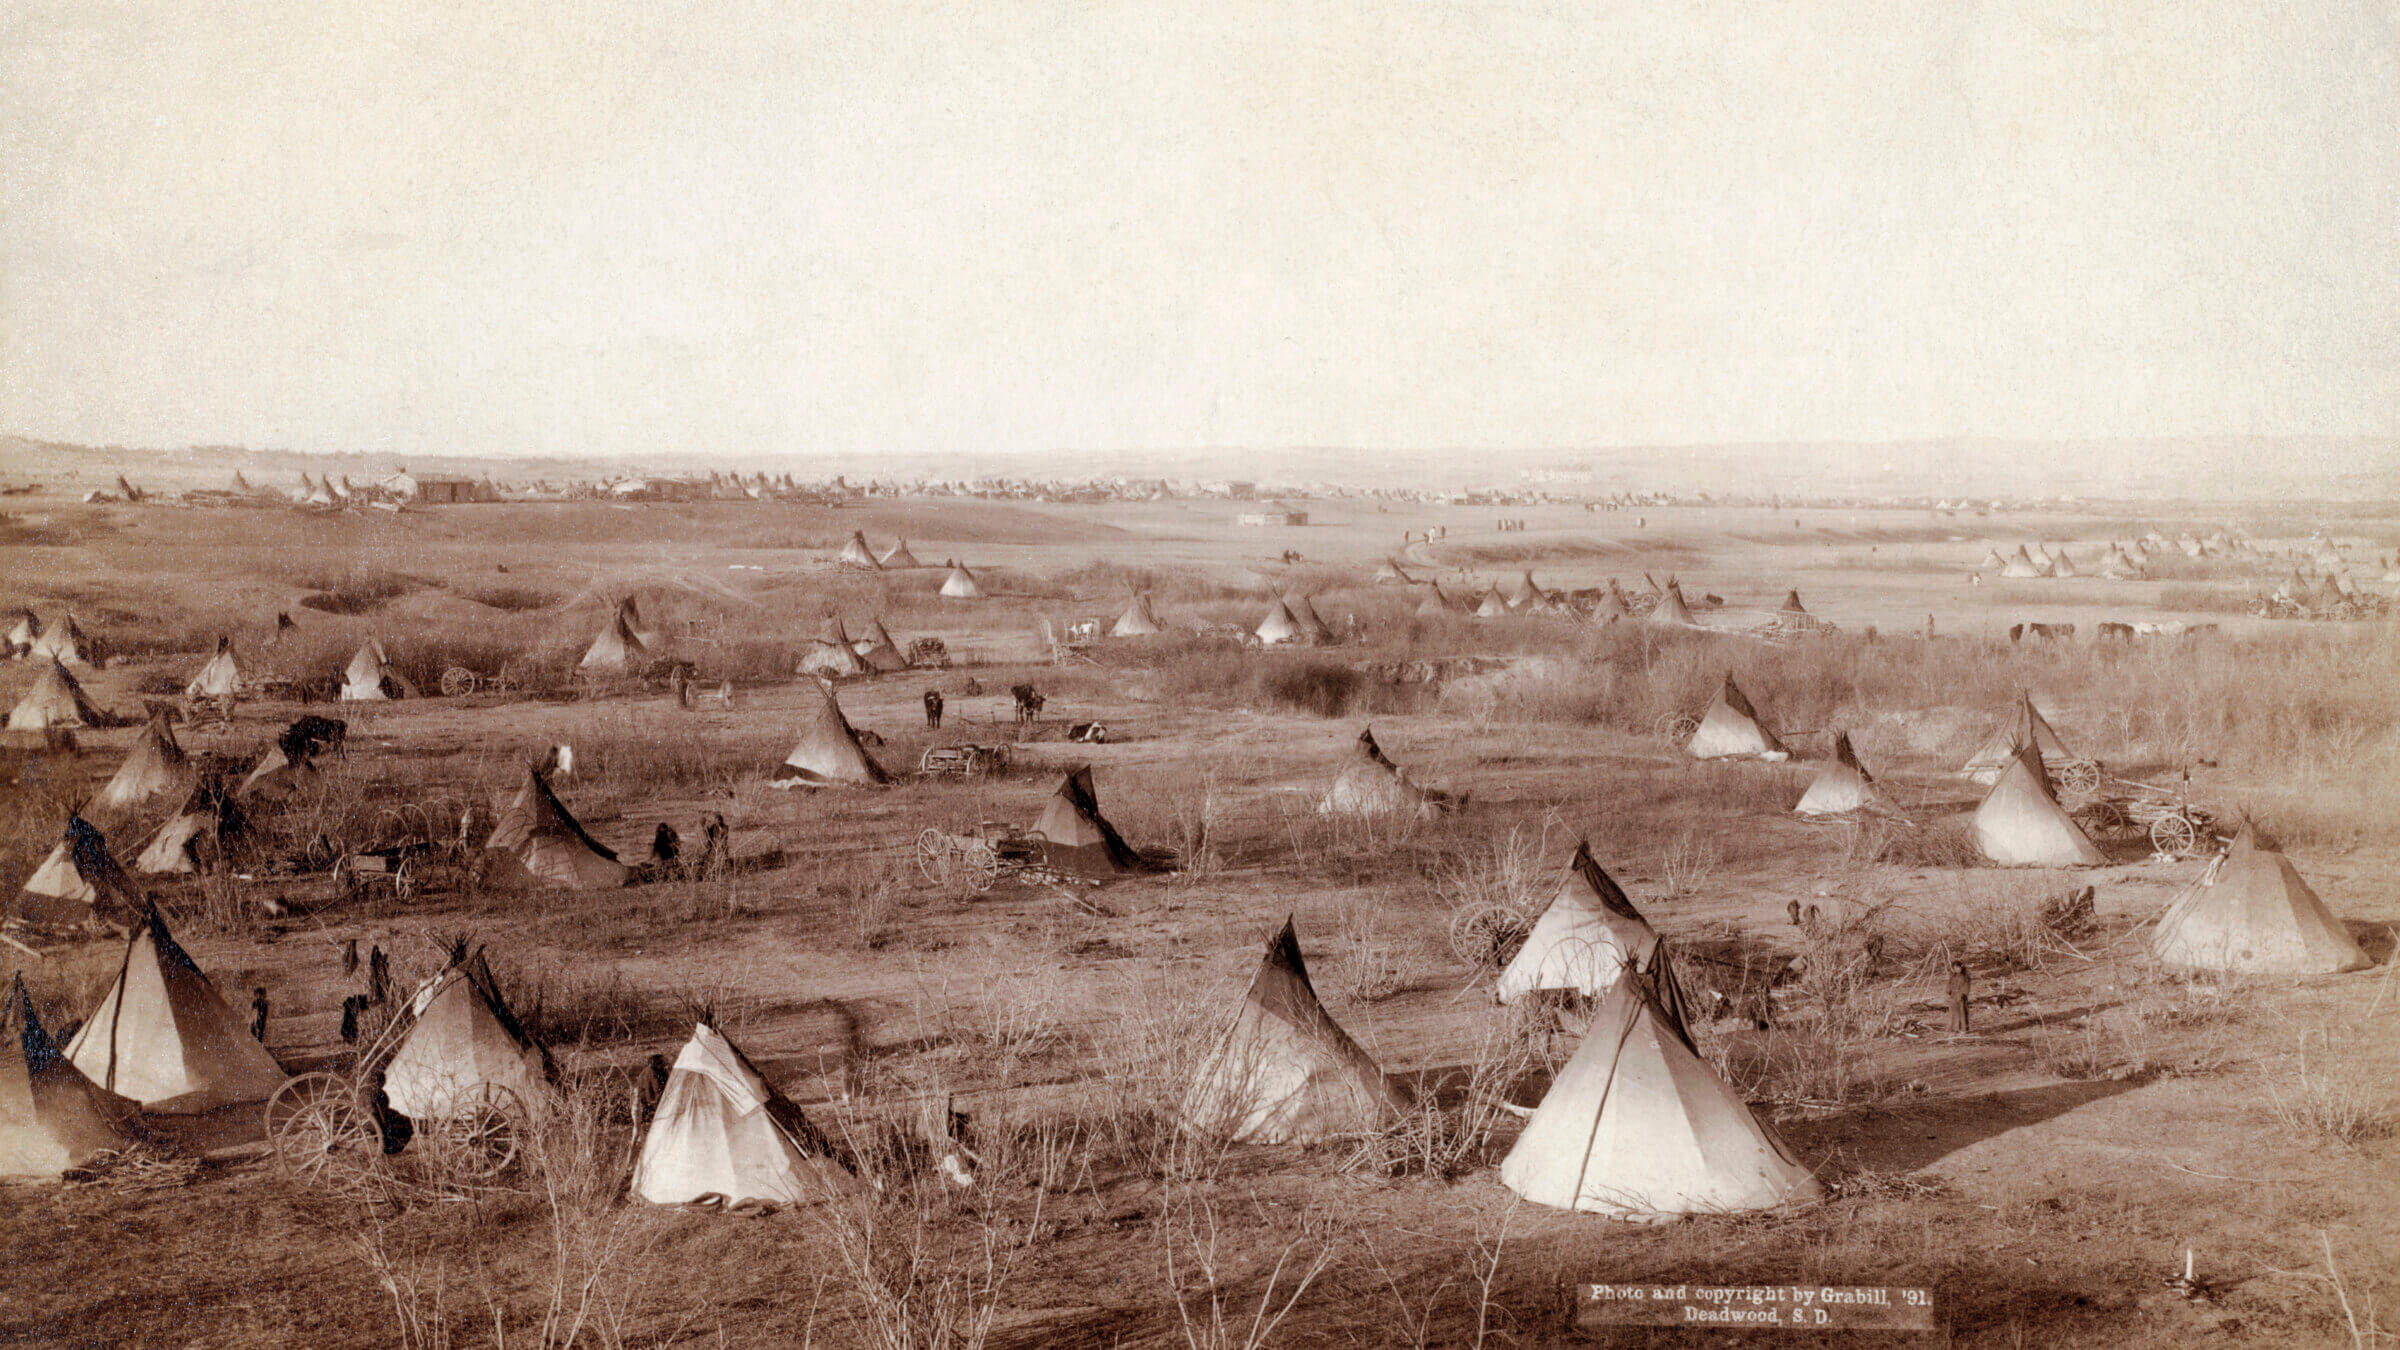 A Lakota tribal village in South Dakota, circa 1891.